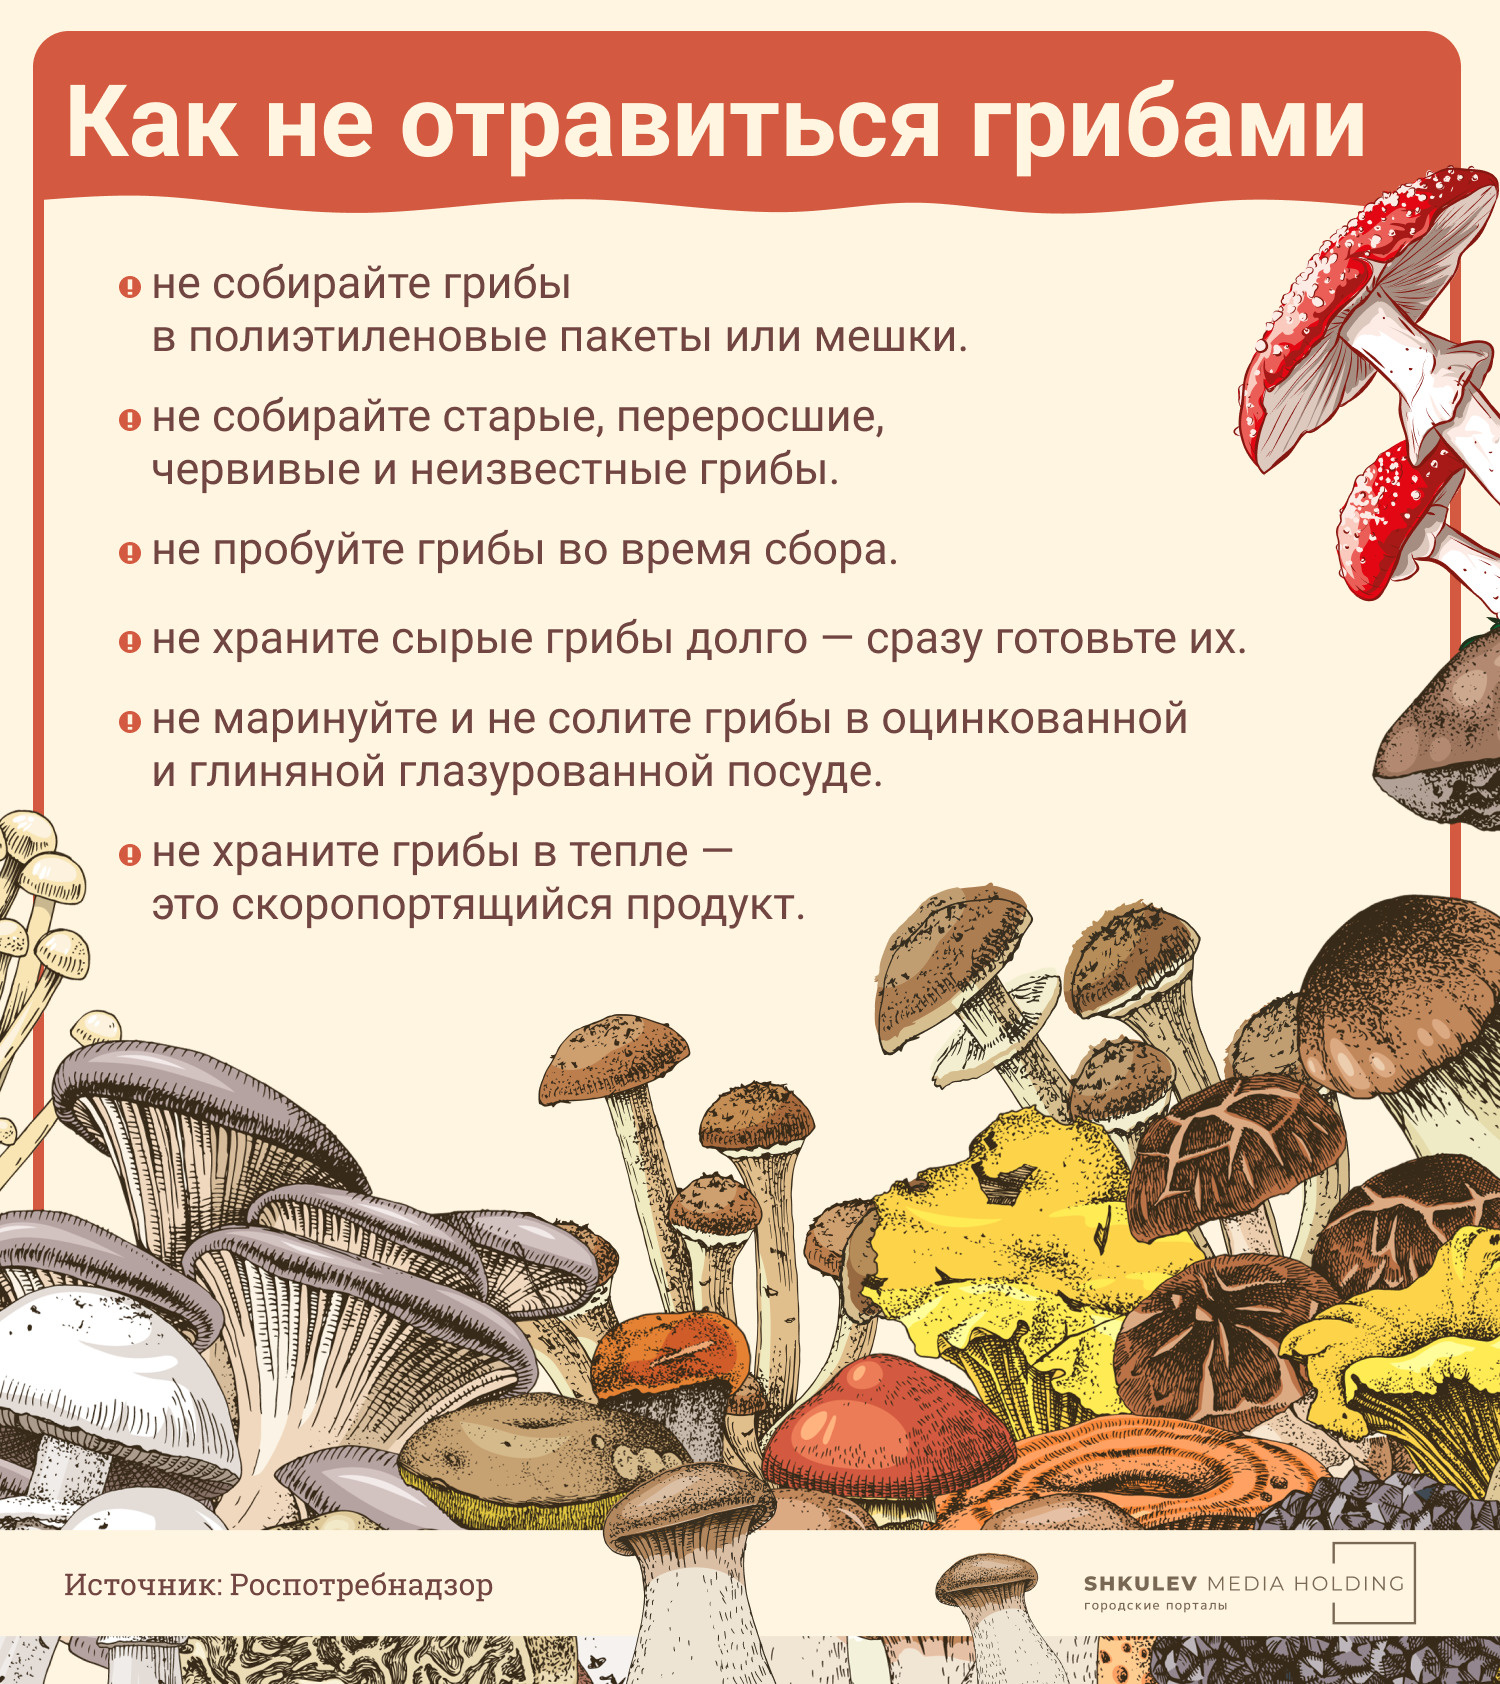 Зря вы их не собираете: врачи назвали пять самых полезных грибов грибы, грибов, можно, говорит, грибах, которые, граммов, Барташевич, могут, полезны, крови, поэтому, вещества, полезными, сыроежки, способны, собирать, рекомендуют, приготовлением, Кроме